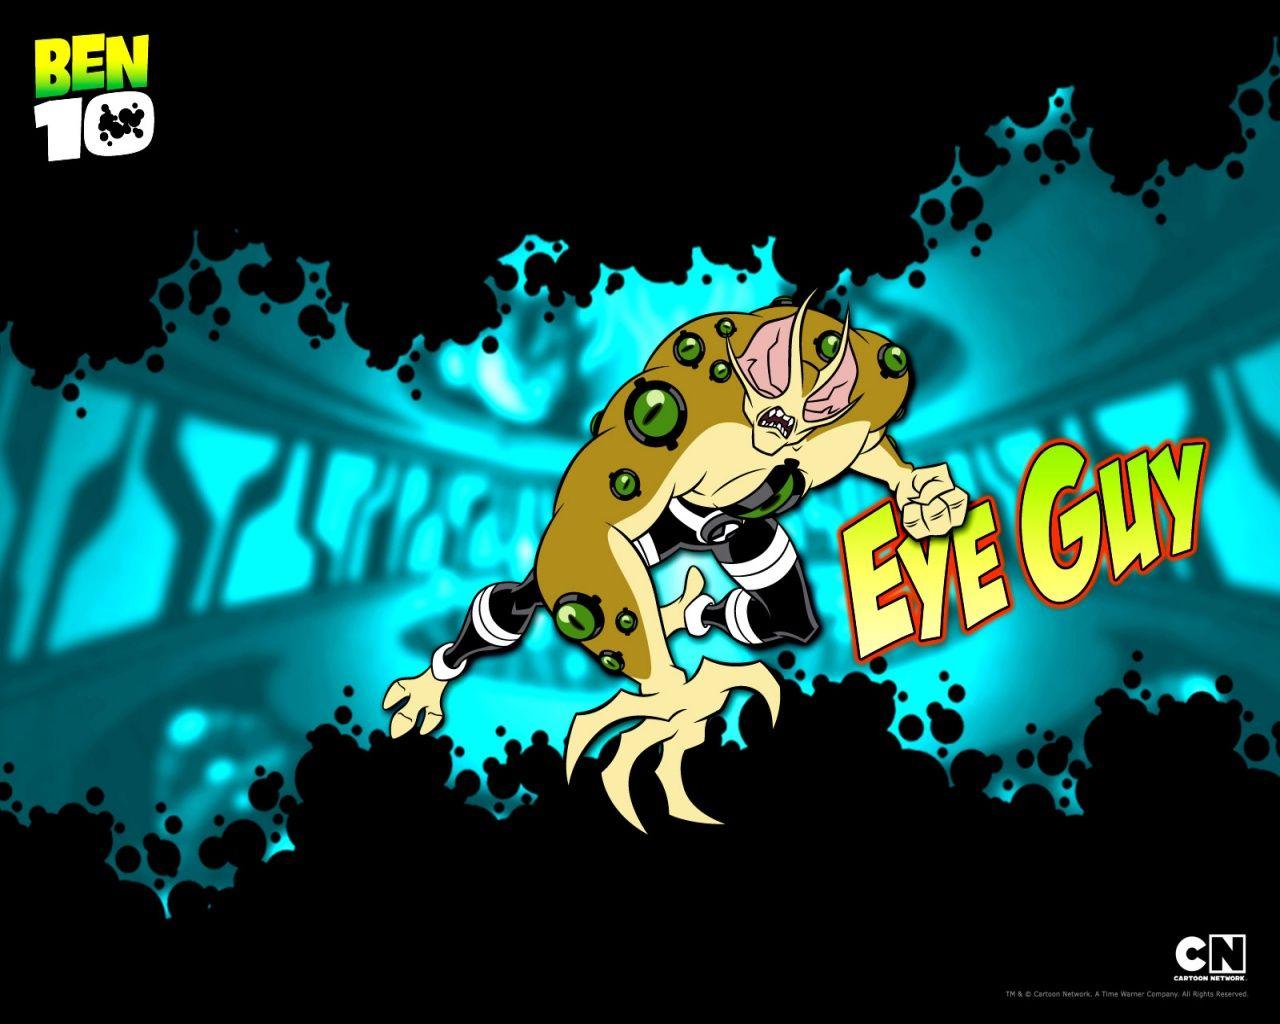 Ben 10 Ultimate Alien Eye Guy. Cartoons. Ben 10